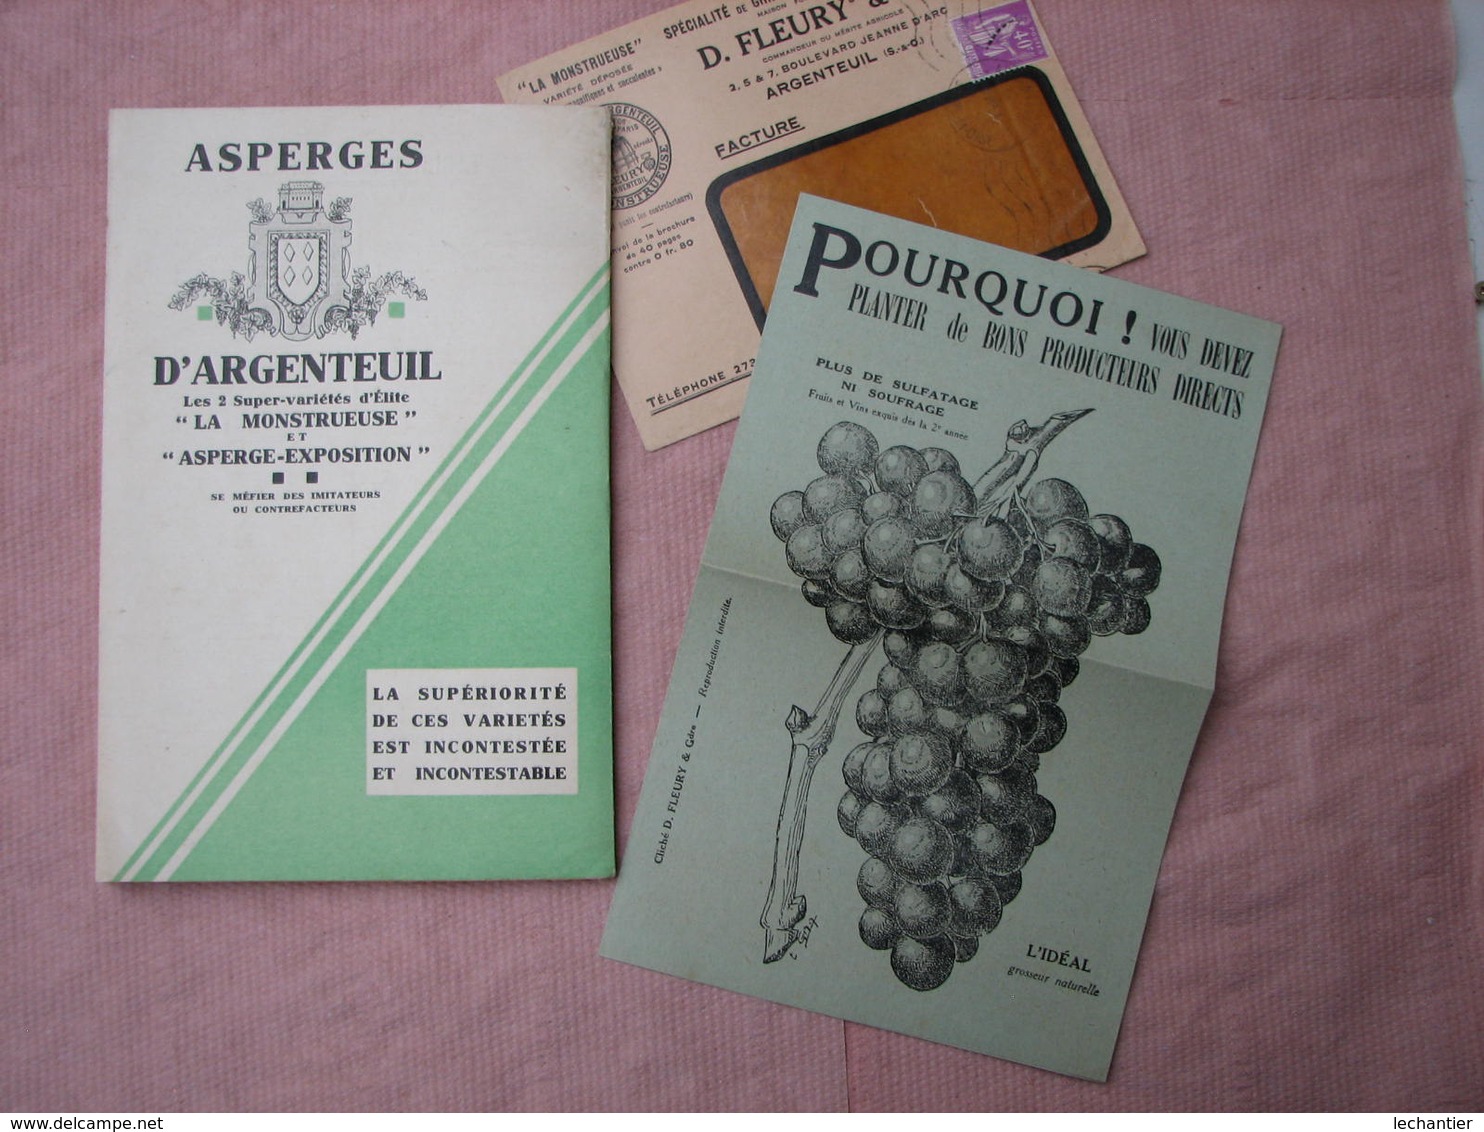 Trés beau catalogue de 1933  des ASPERGES d' ARGENTEUIL , Fleury et Gdre 81 pages voir autres productions TBE